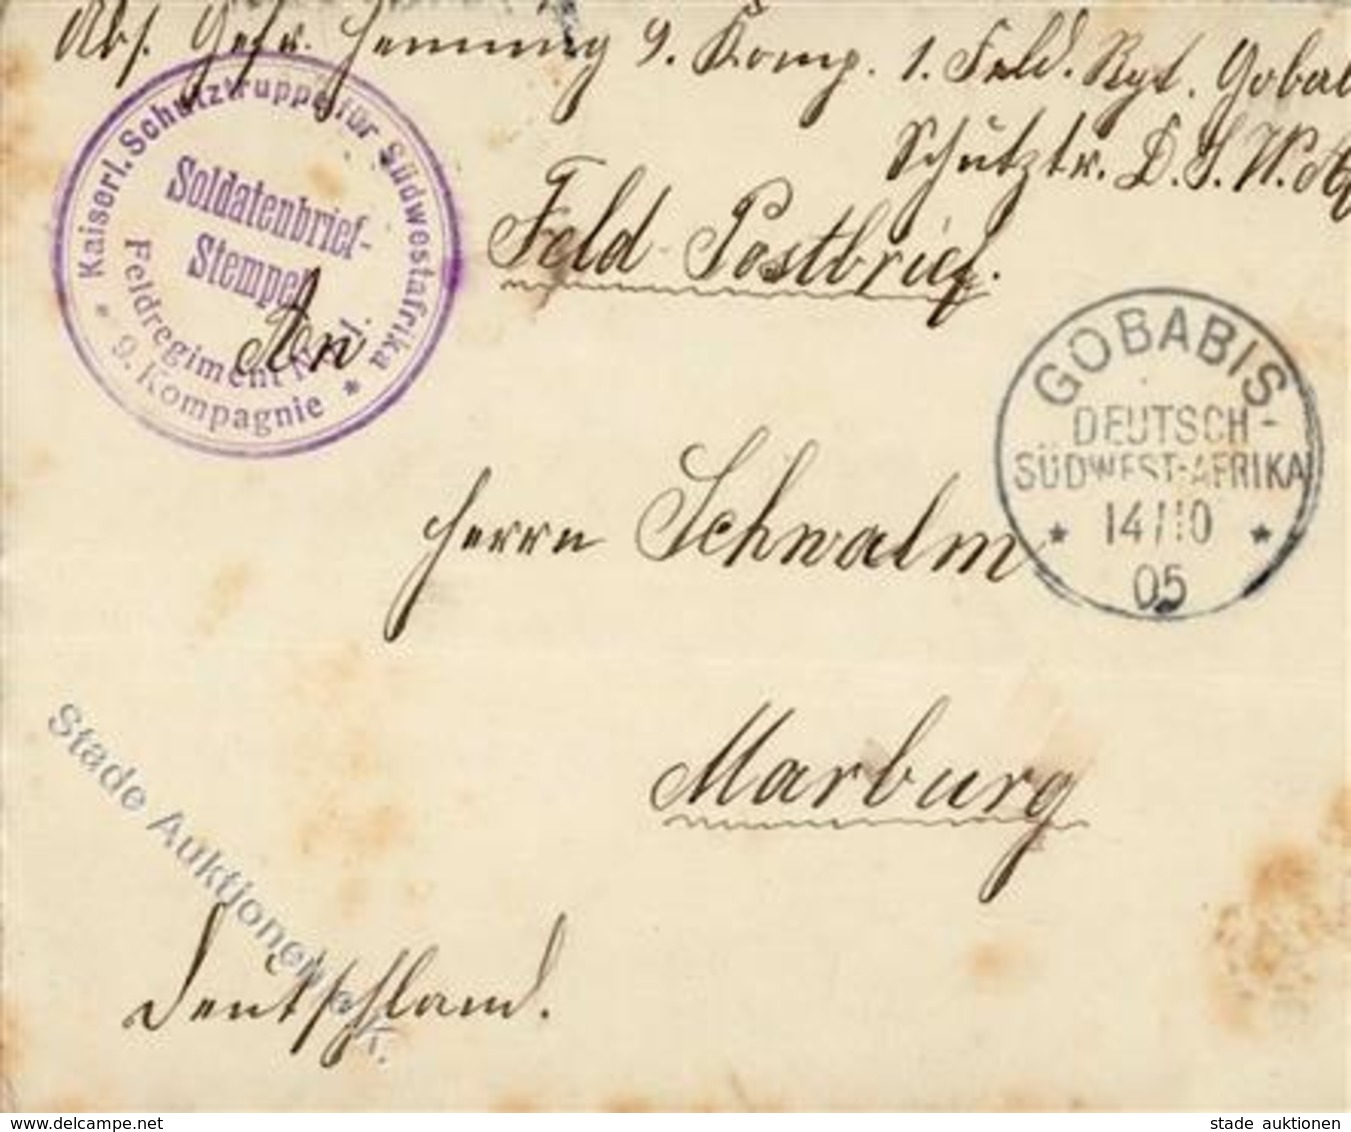 Deutsche Kolonien DSW - O GOBABIS 14.10.05 + Schutztruppen-o Auf Feldpostbrief -etwas Fleckig- Colonies - Histoire